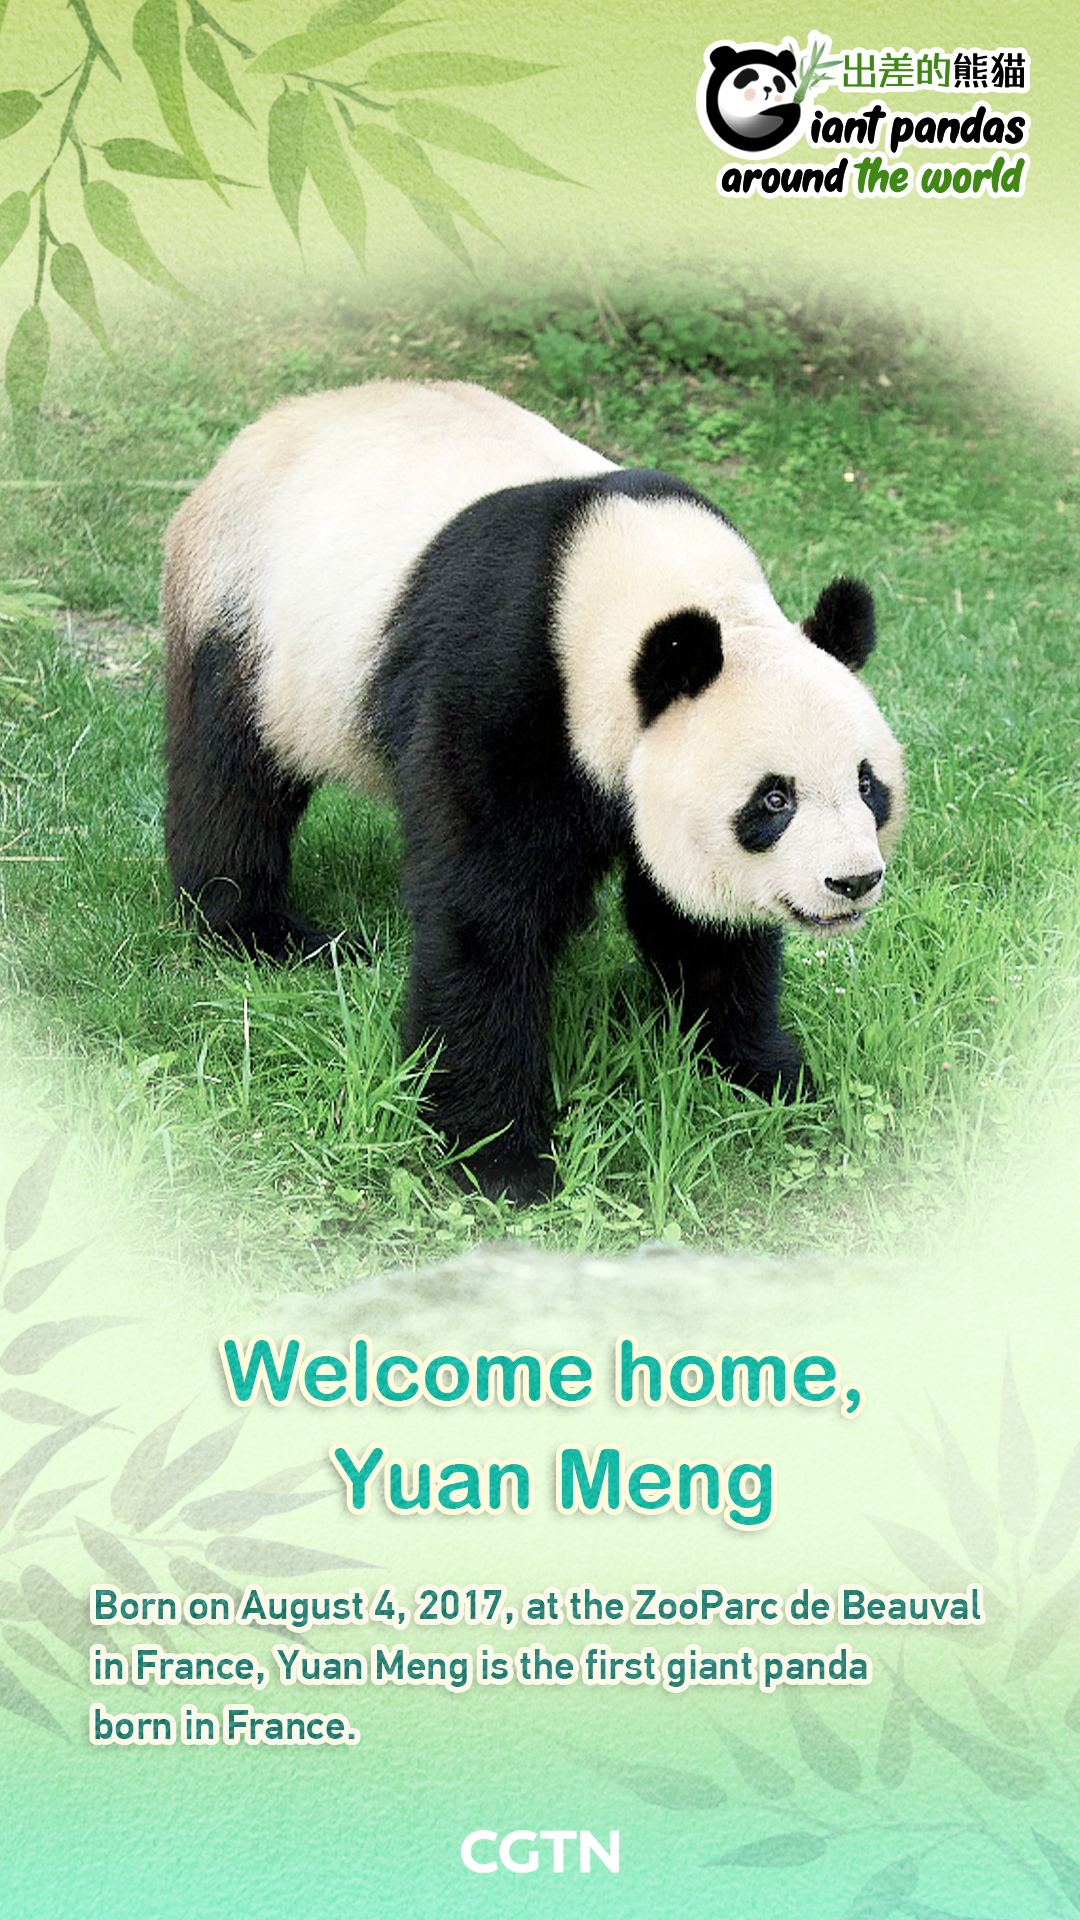 Giant panda Yuan Meng coming home to China